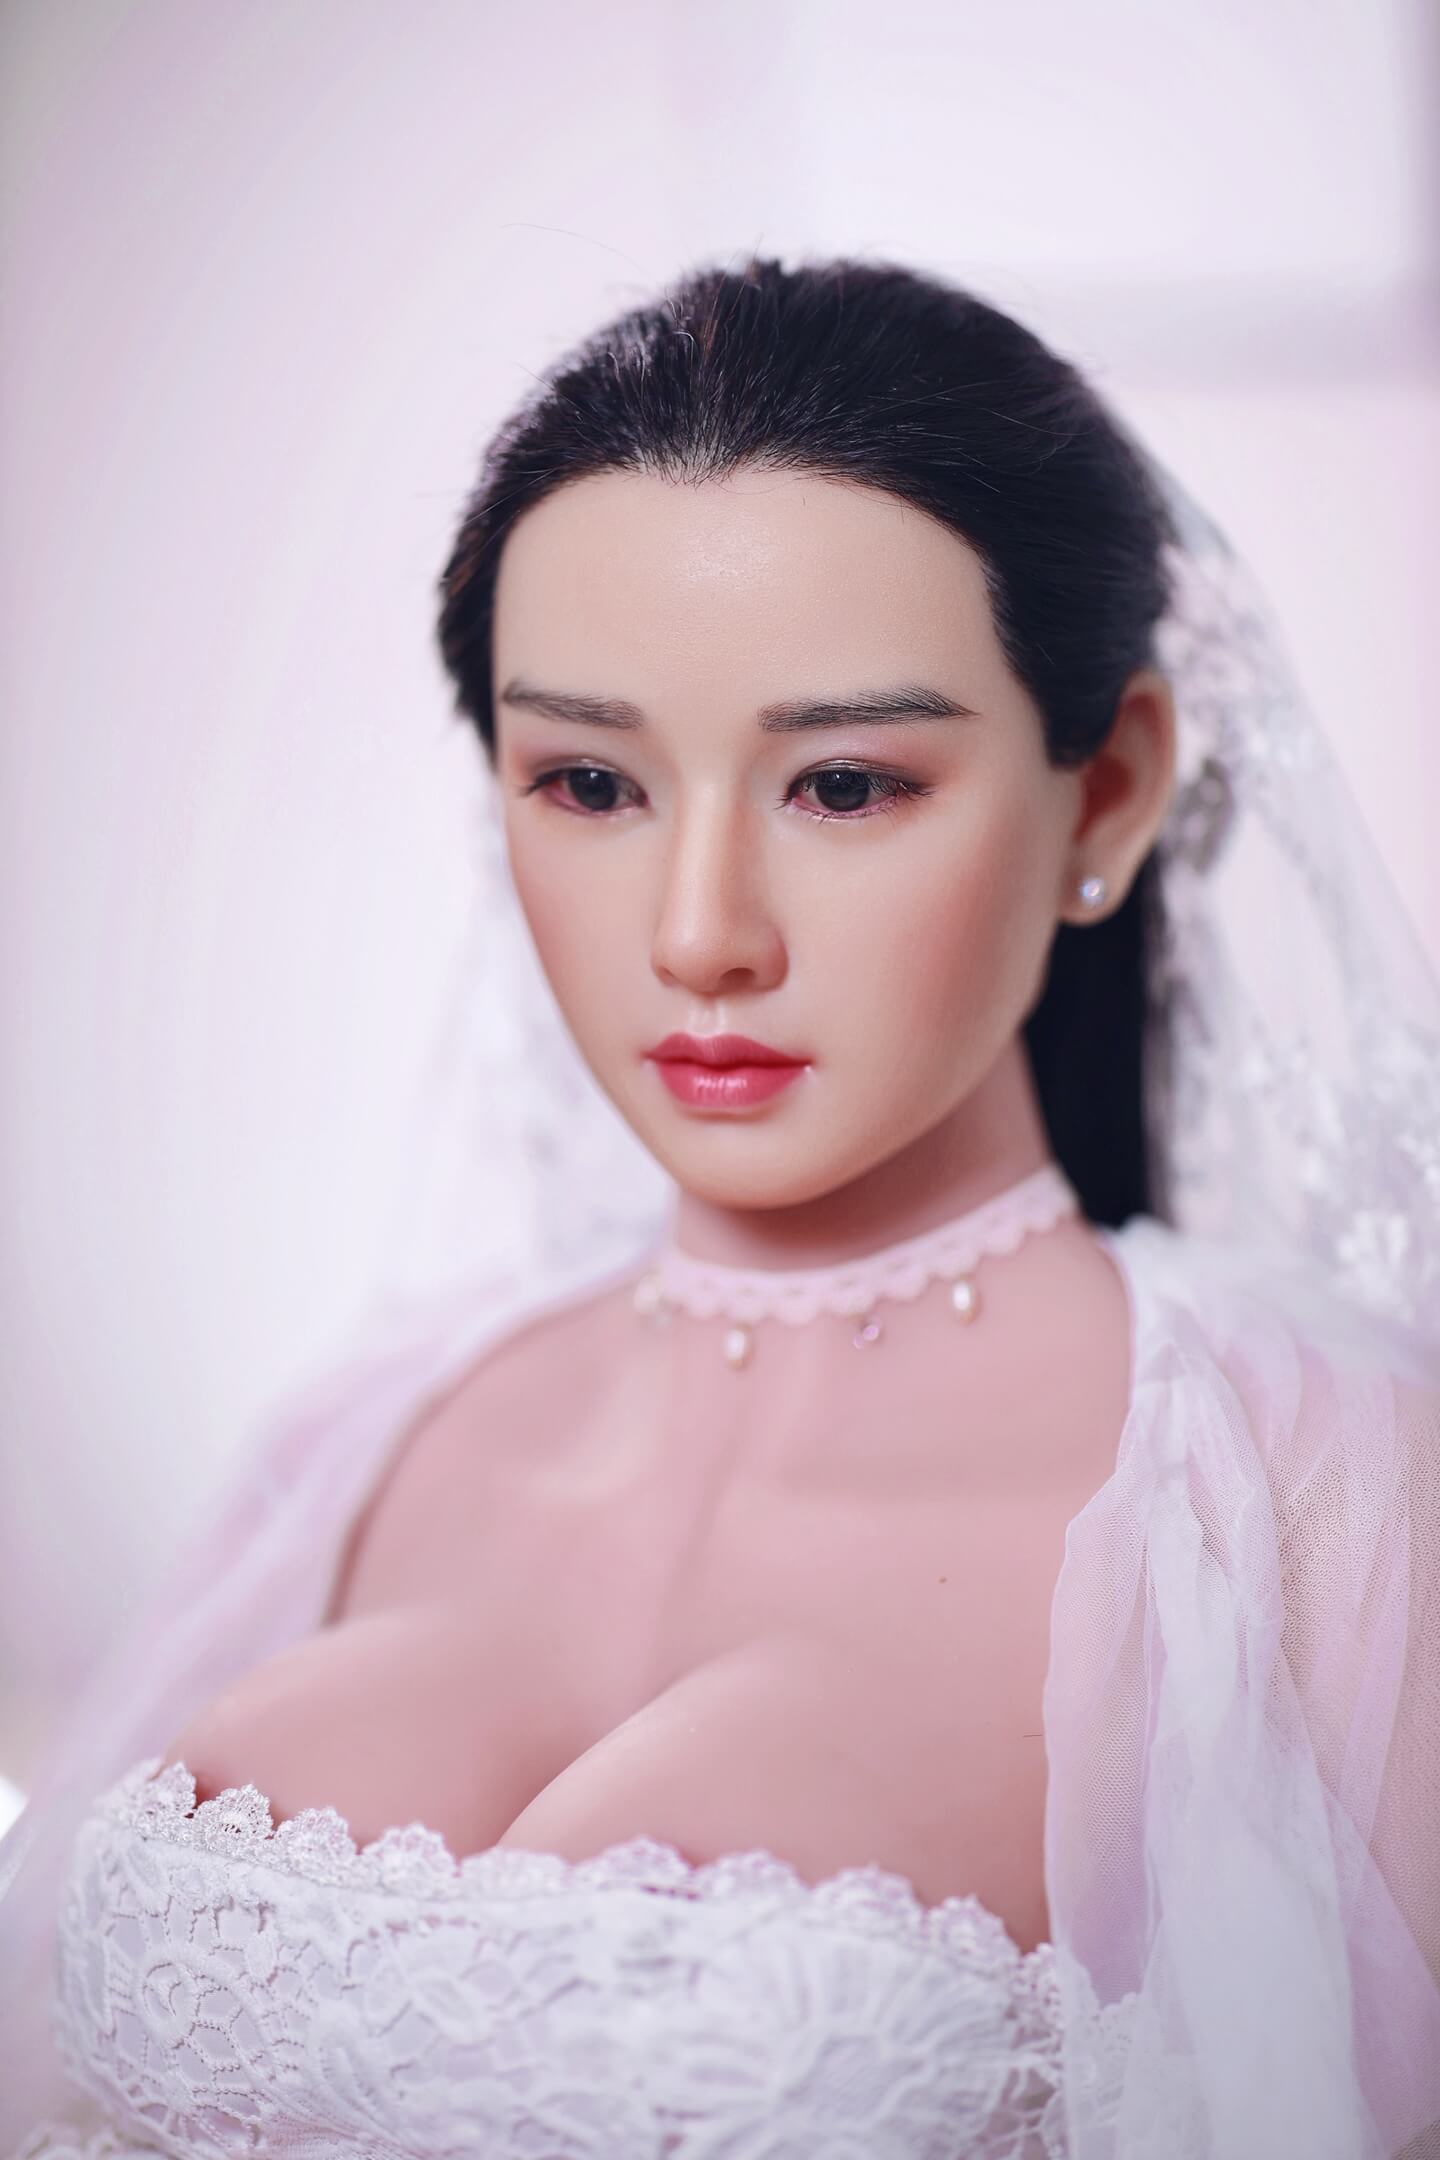 Armani(Silicone Head): JYDoll Pregnant Asian Sex Doll